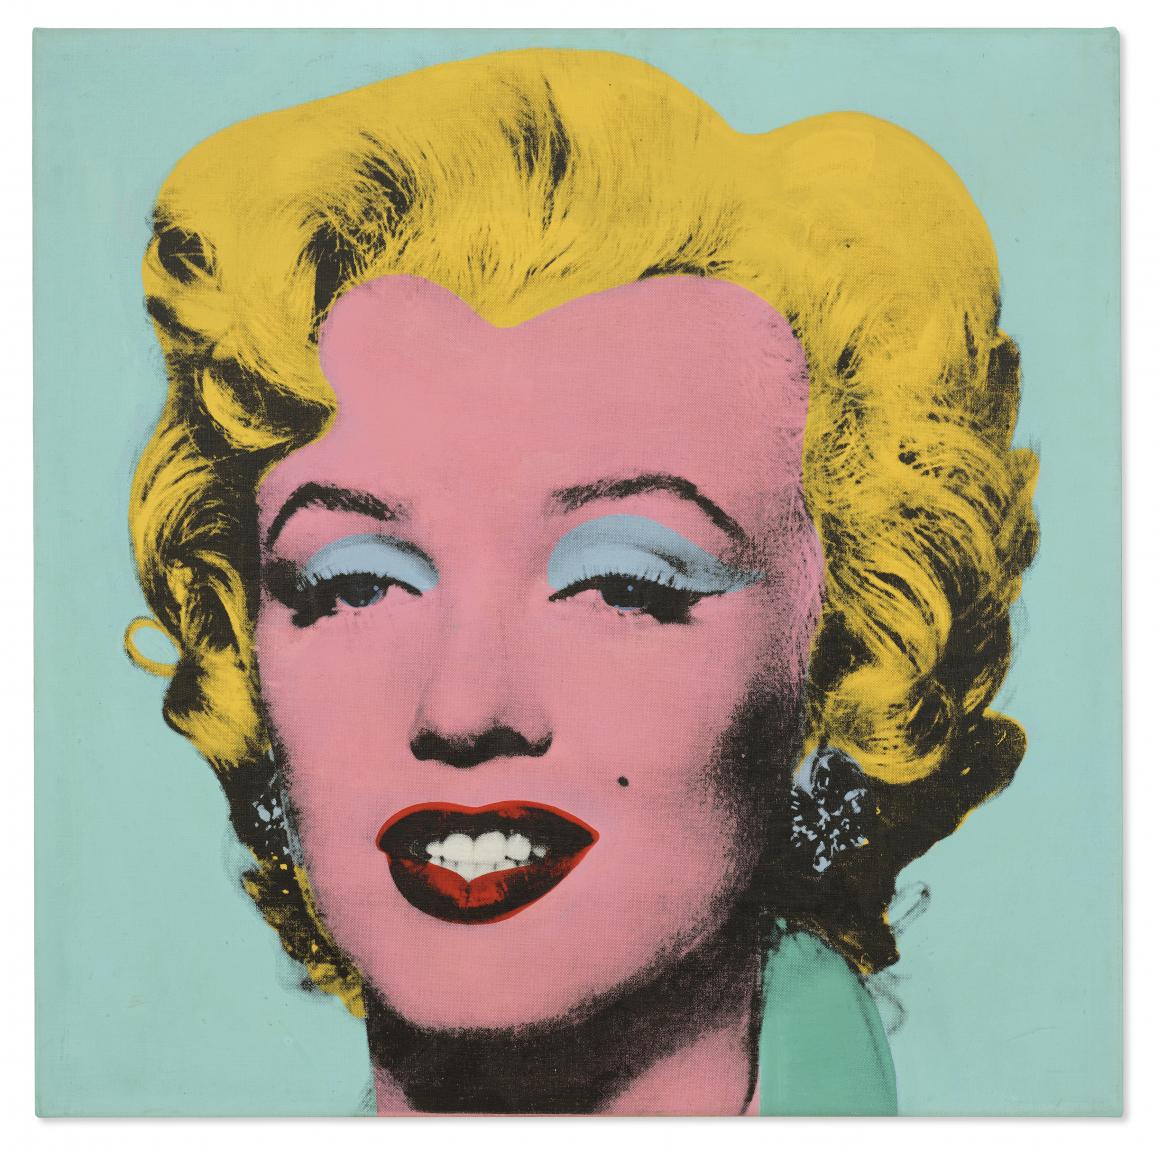 Andy Warhol, "Shot Sage Blue Marilyn, 1964